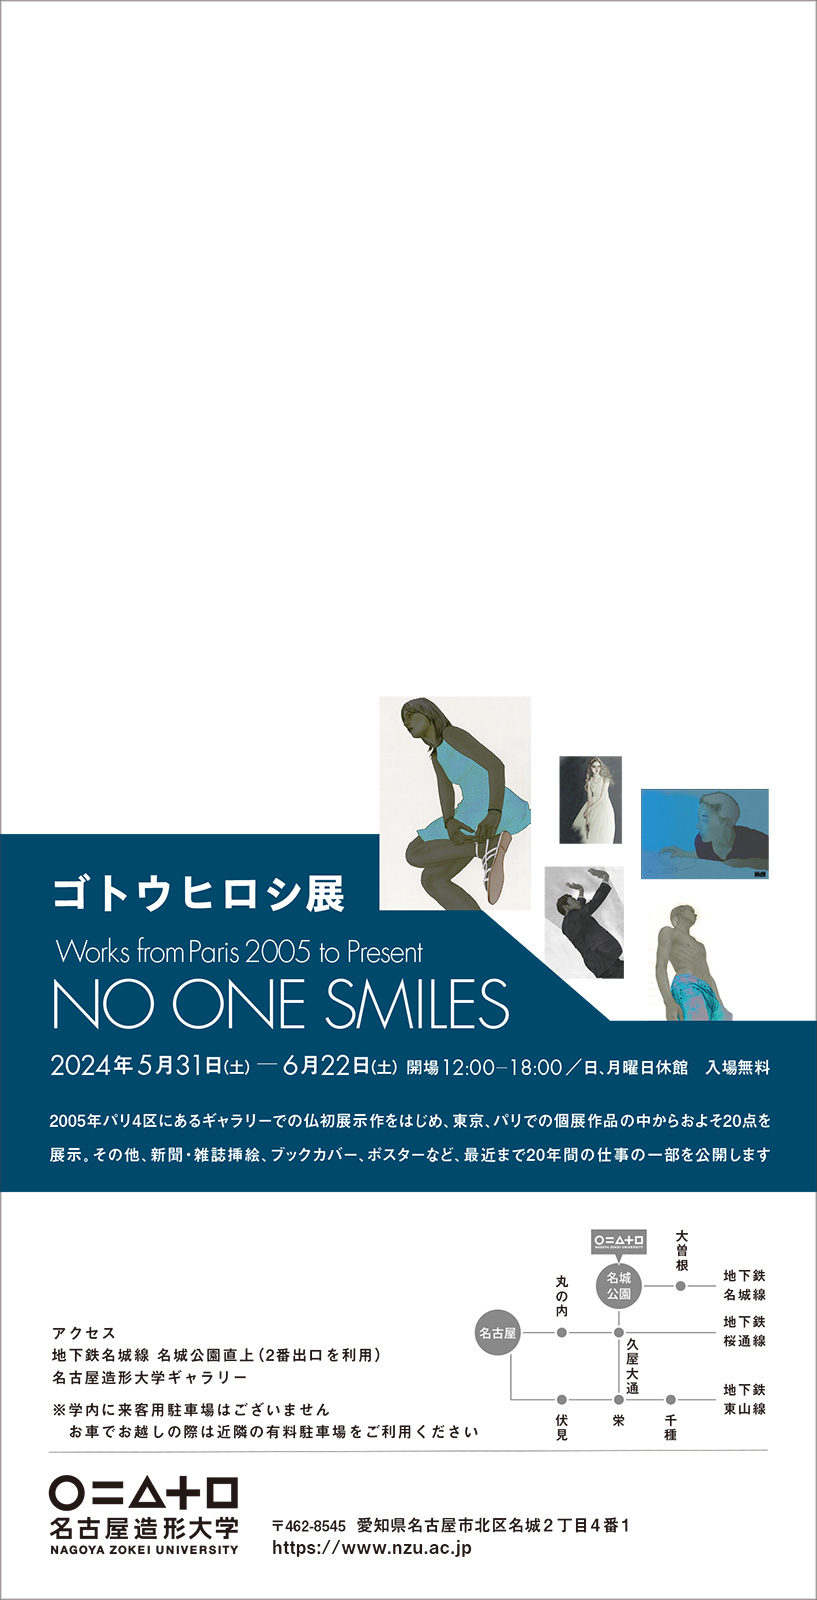 ゴトウヒロシ展  Works from Paris 2005 to Present「NO ONE SMILES」